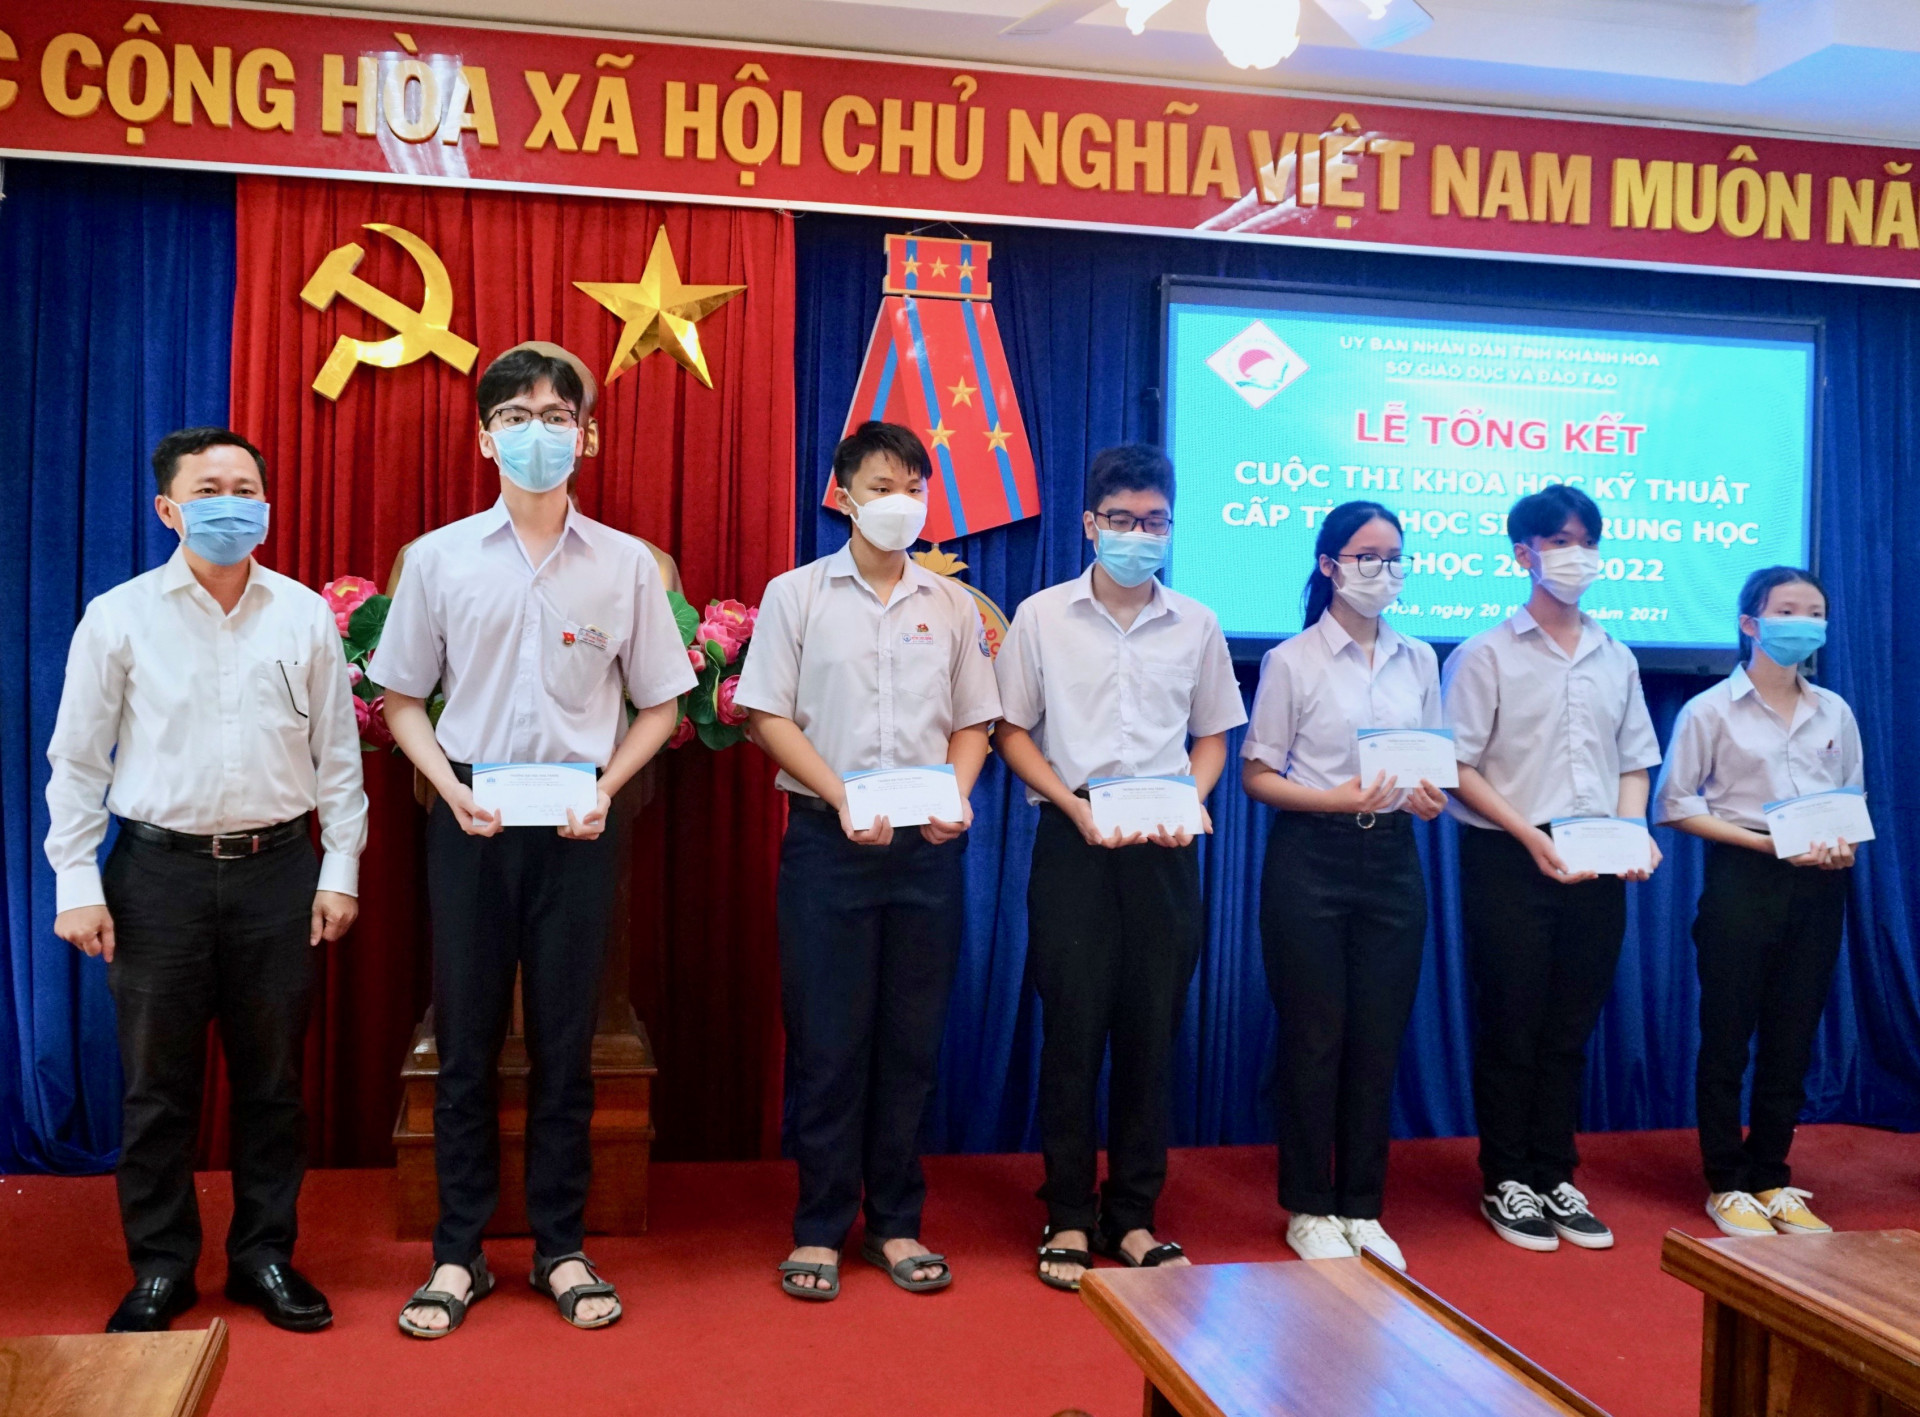 Lãnh đạo Trường Đại học Nha Trang trao phần thưởng cho các học sinh có dự án đạt giải nhất.